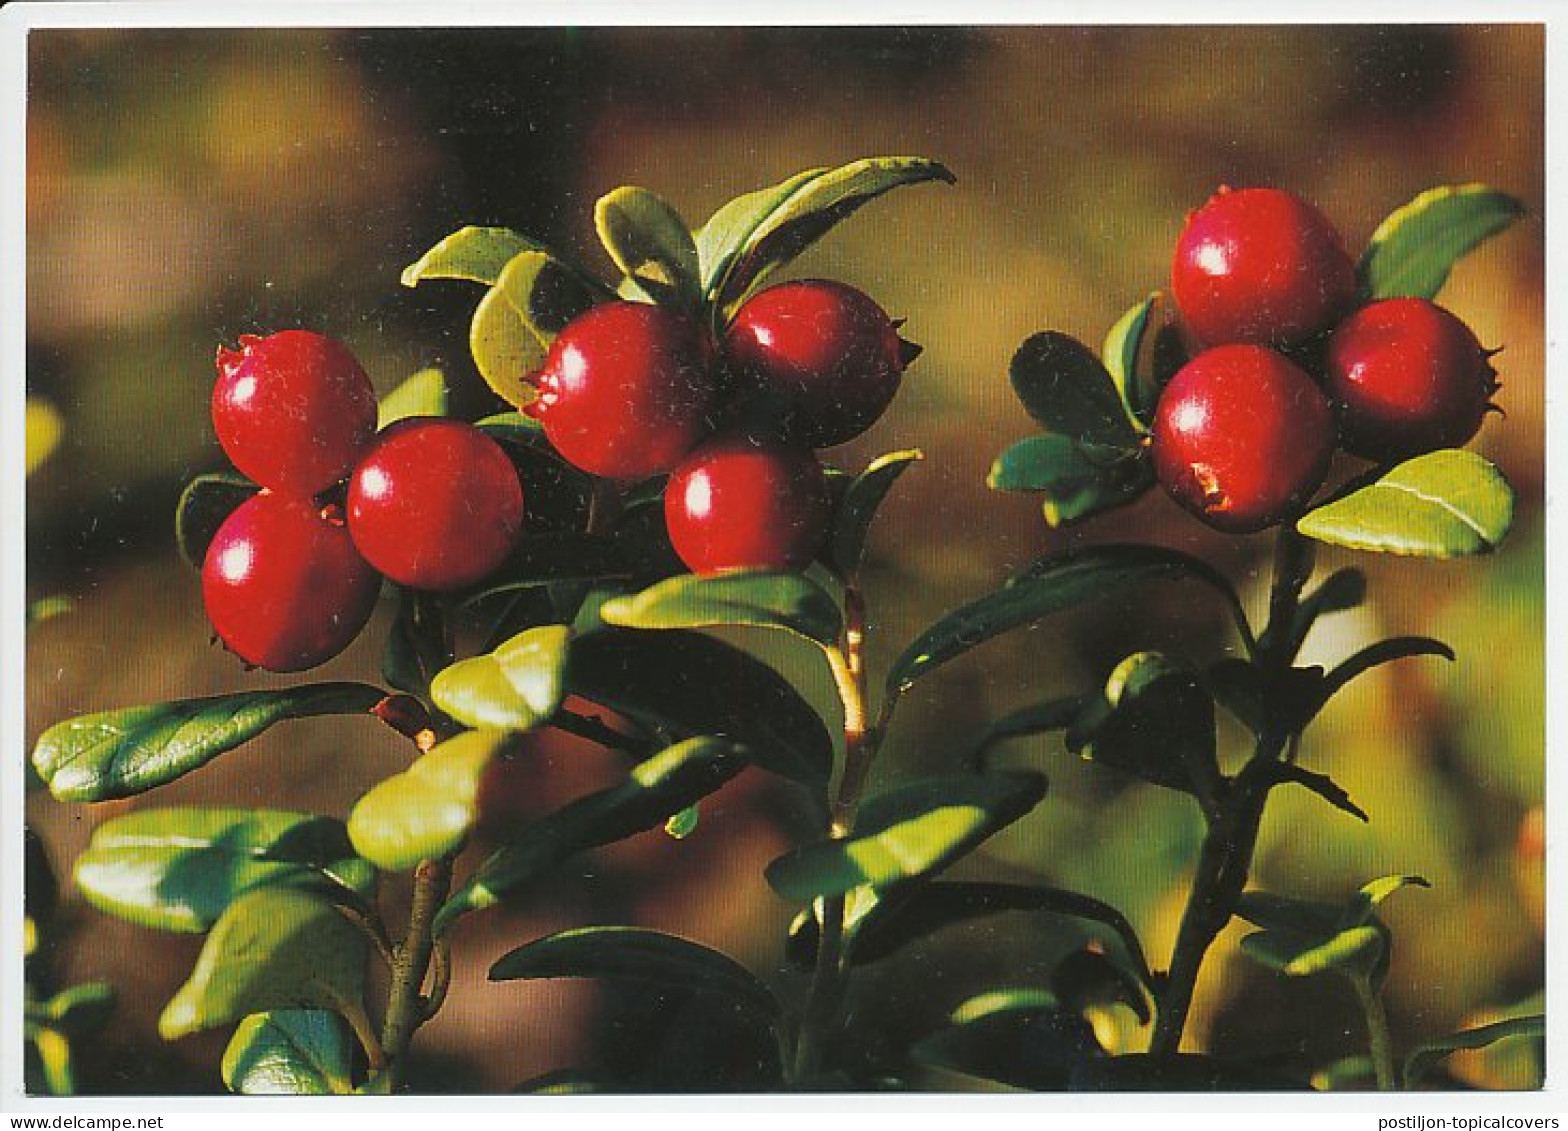 Postal Stationery Sweden Cranberry - Fruits